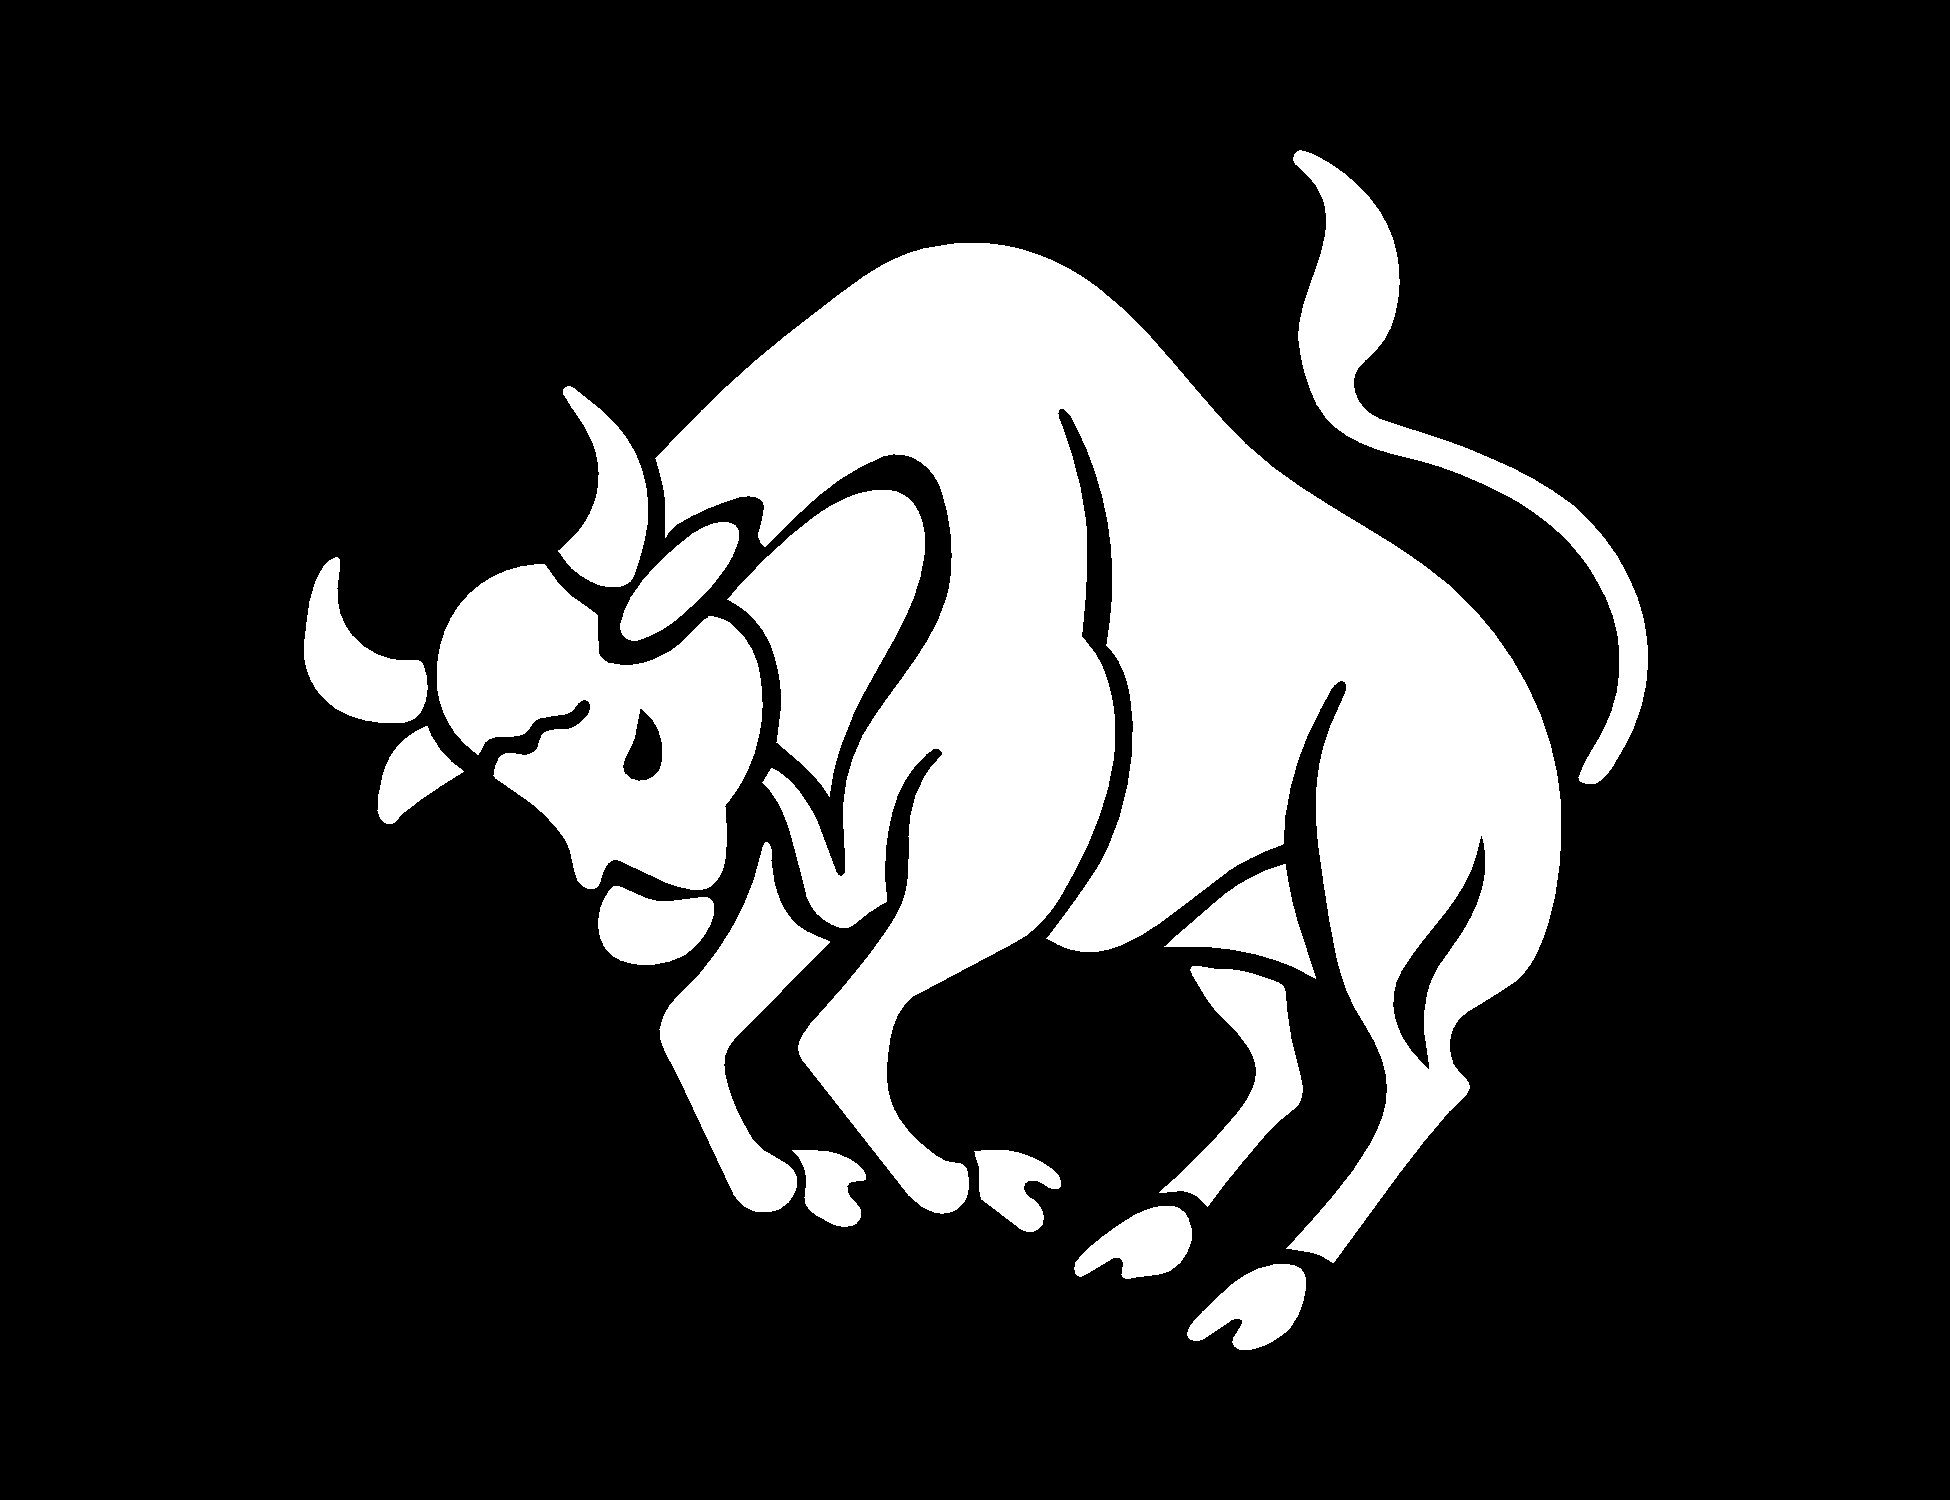 Год быка дракона. Таурус бык Телец. Трафарет быка. Бык на черном фоне. Бык рисунок.